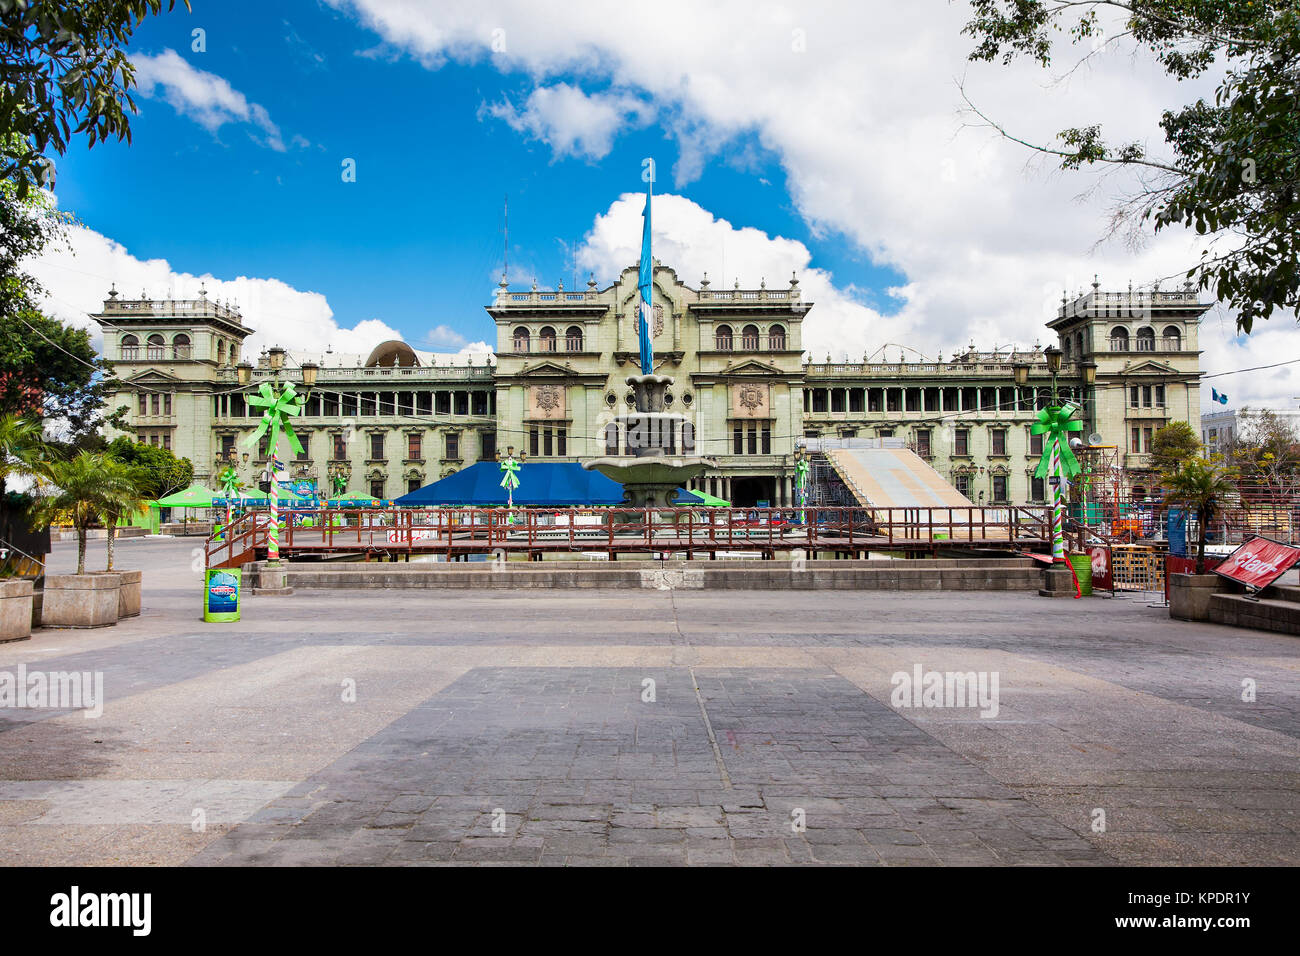 GUATEMALA CITY, GUATEMALA-DEC 25, 2015: National Palace of Culture in Guatemala City on Dec 25, 2015, Guatemala. central America. Stock Photo